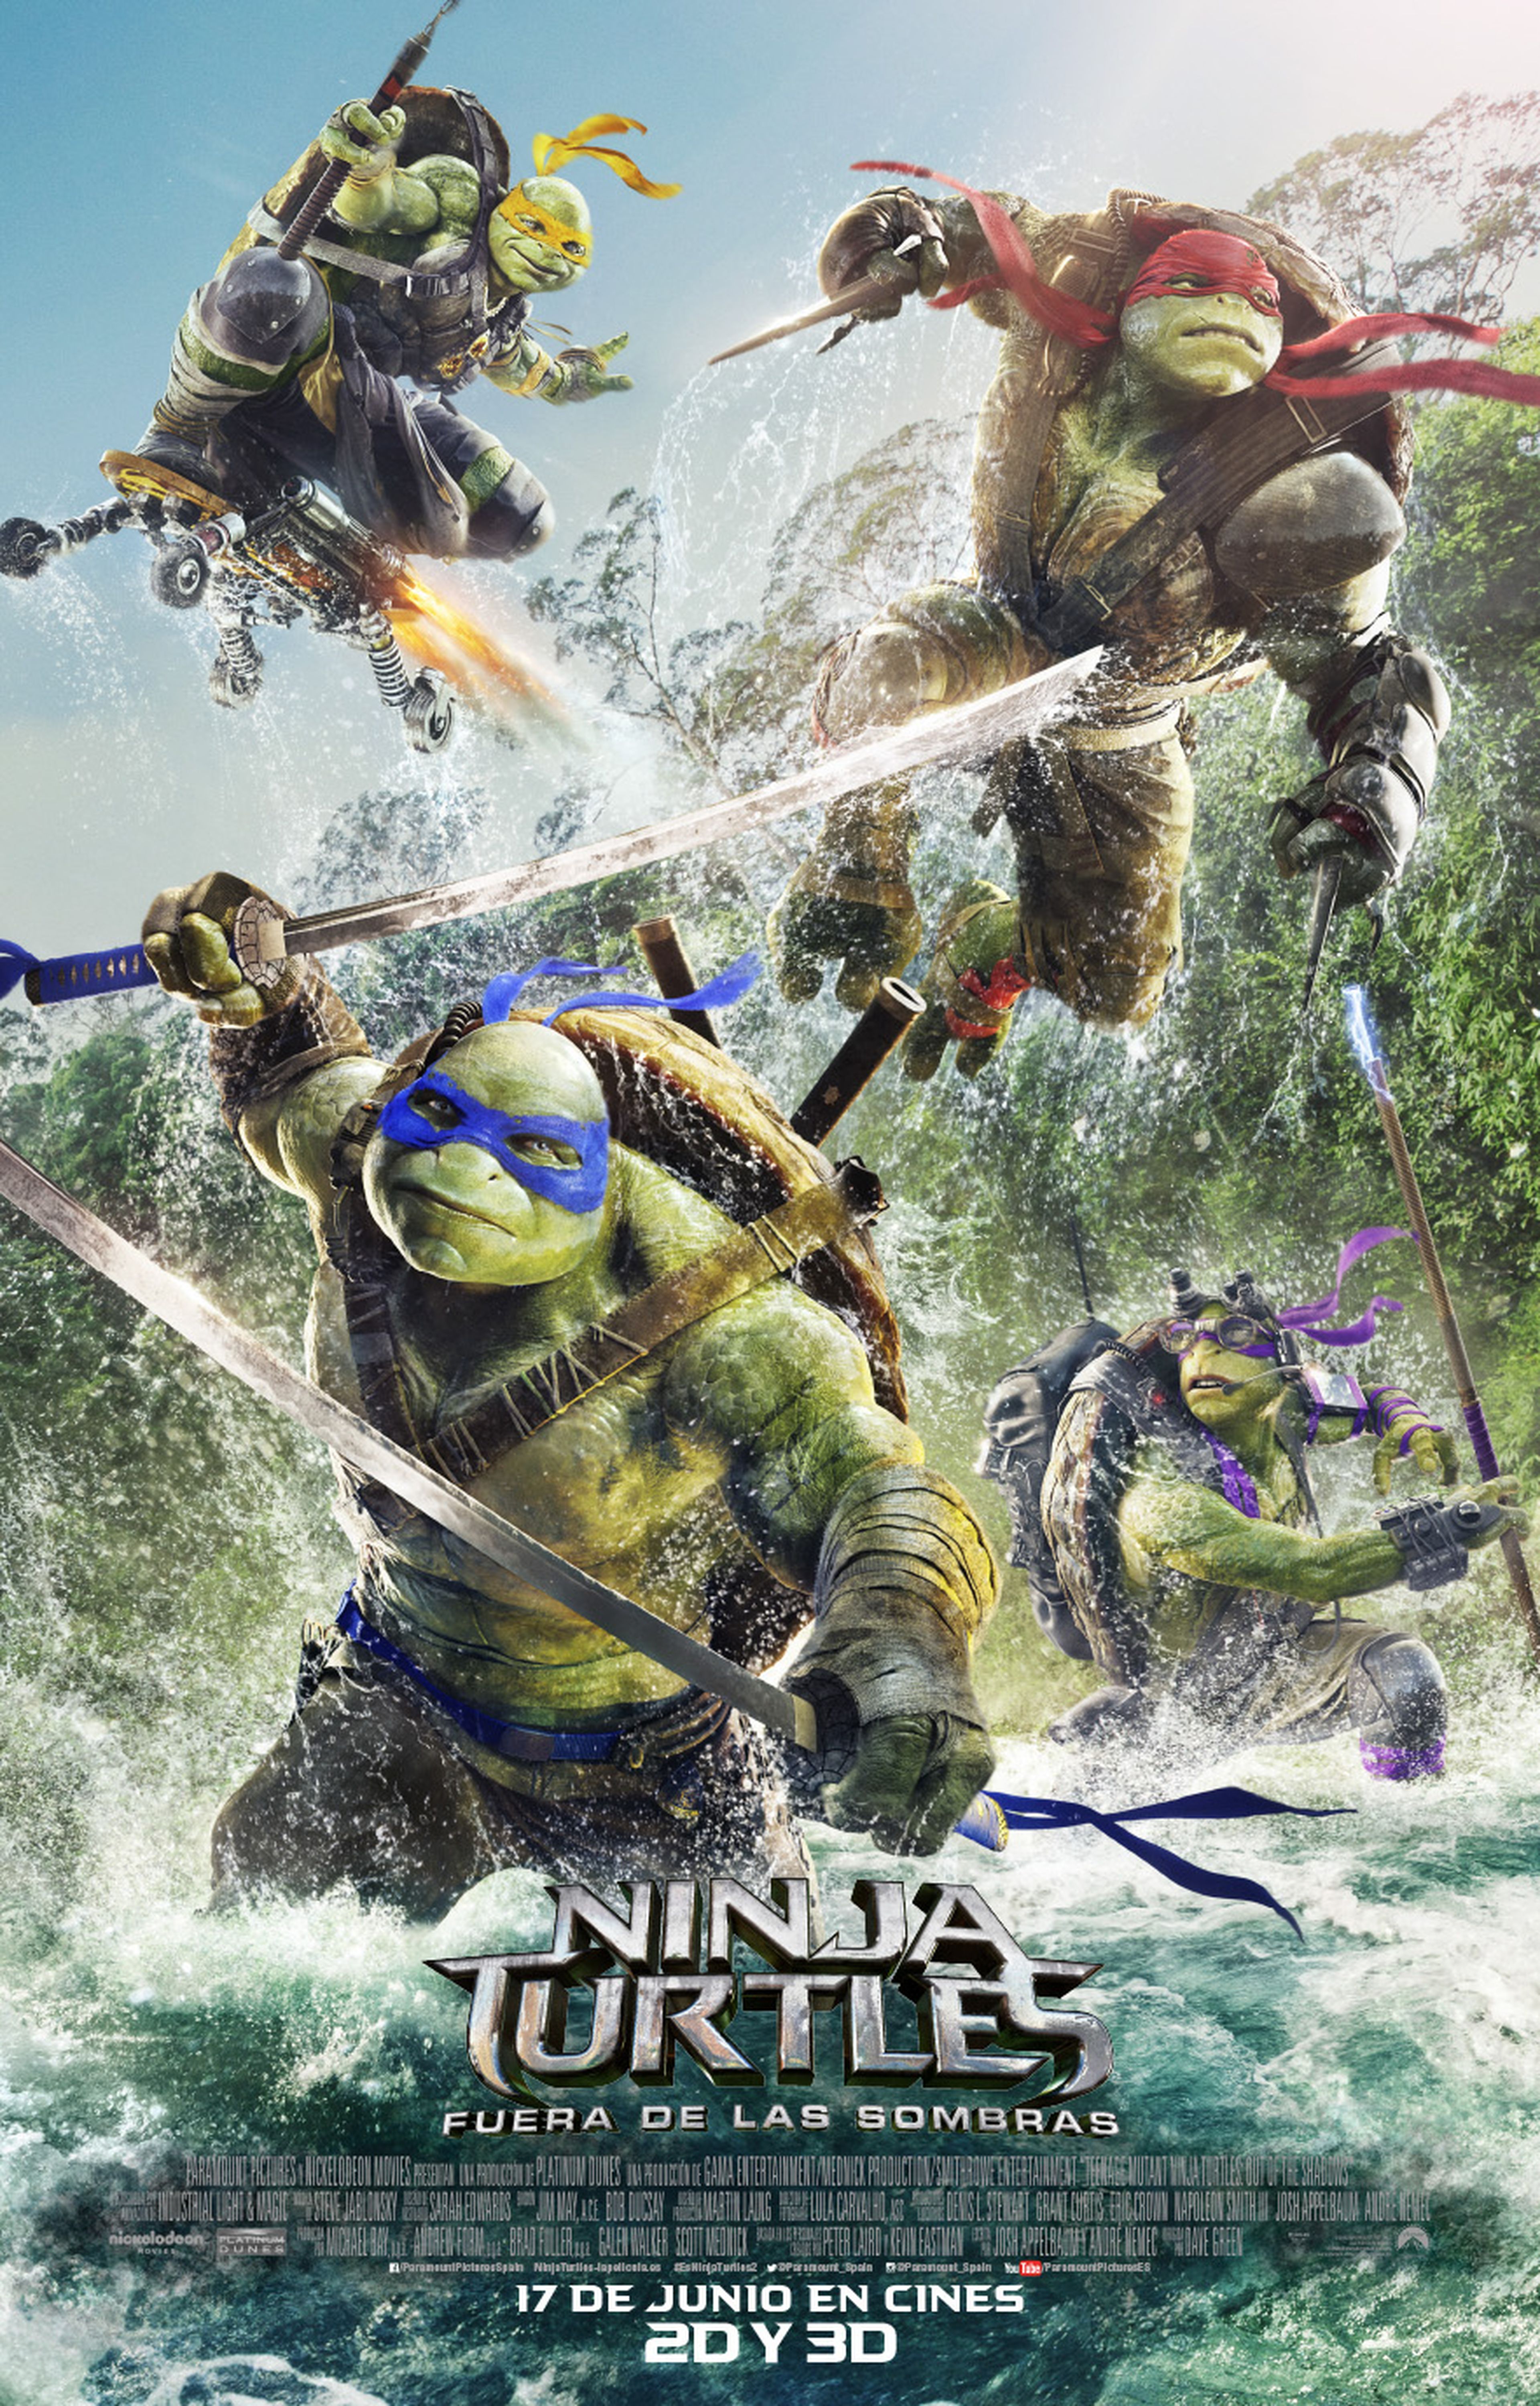 Ninja Turtles: Fuera de las sombras - Crítica con mucho Poder Tortugoso